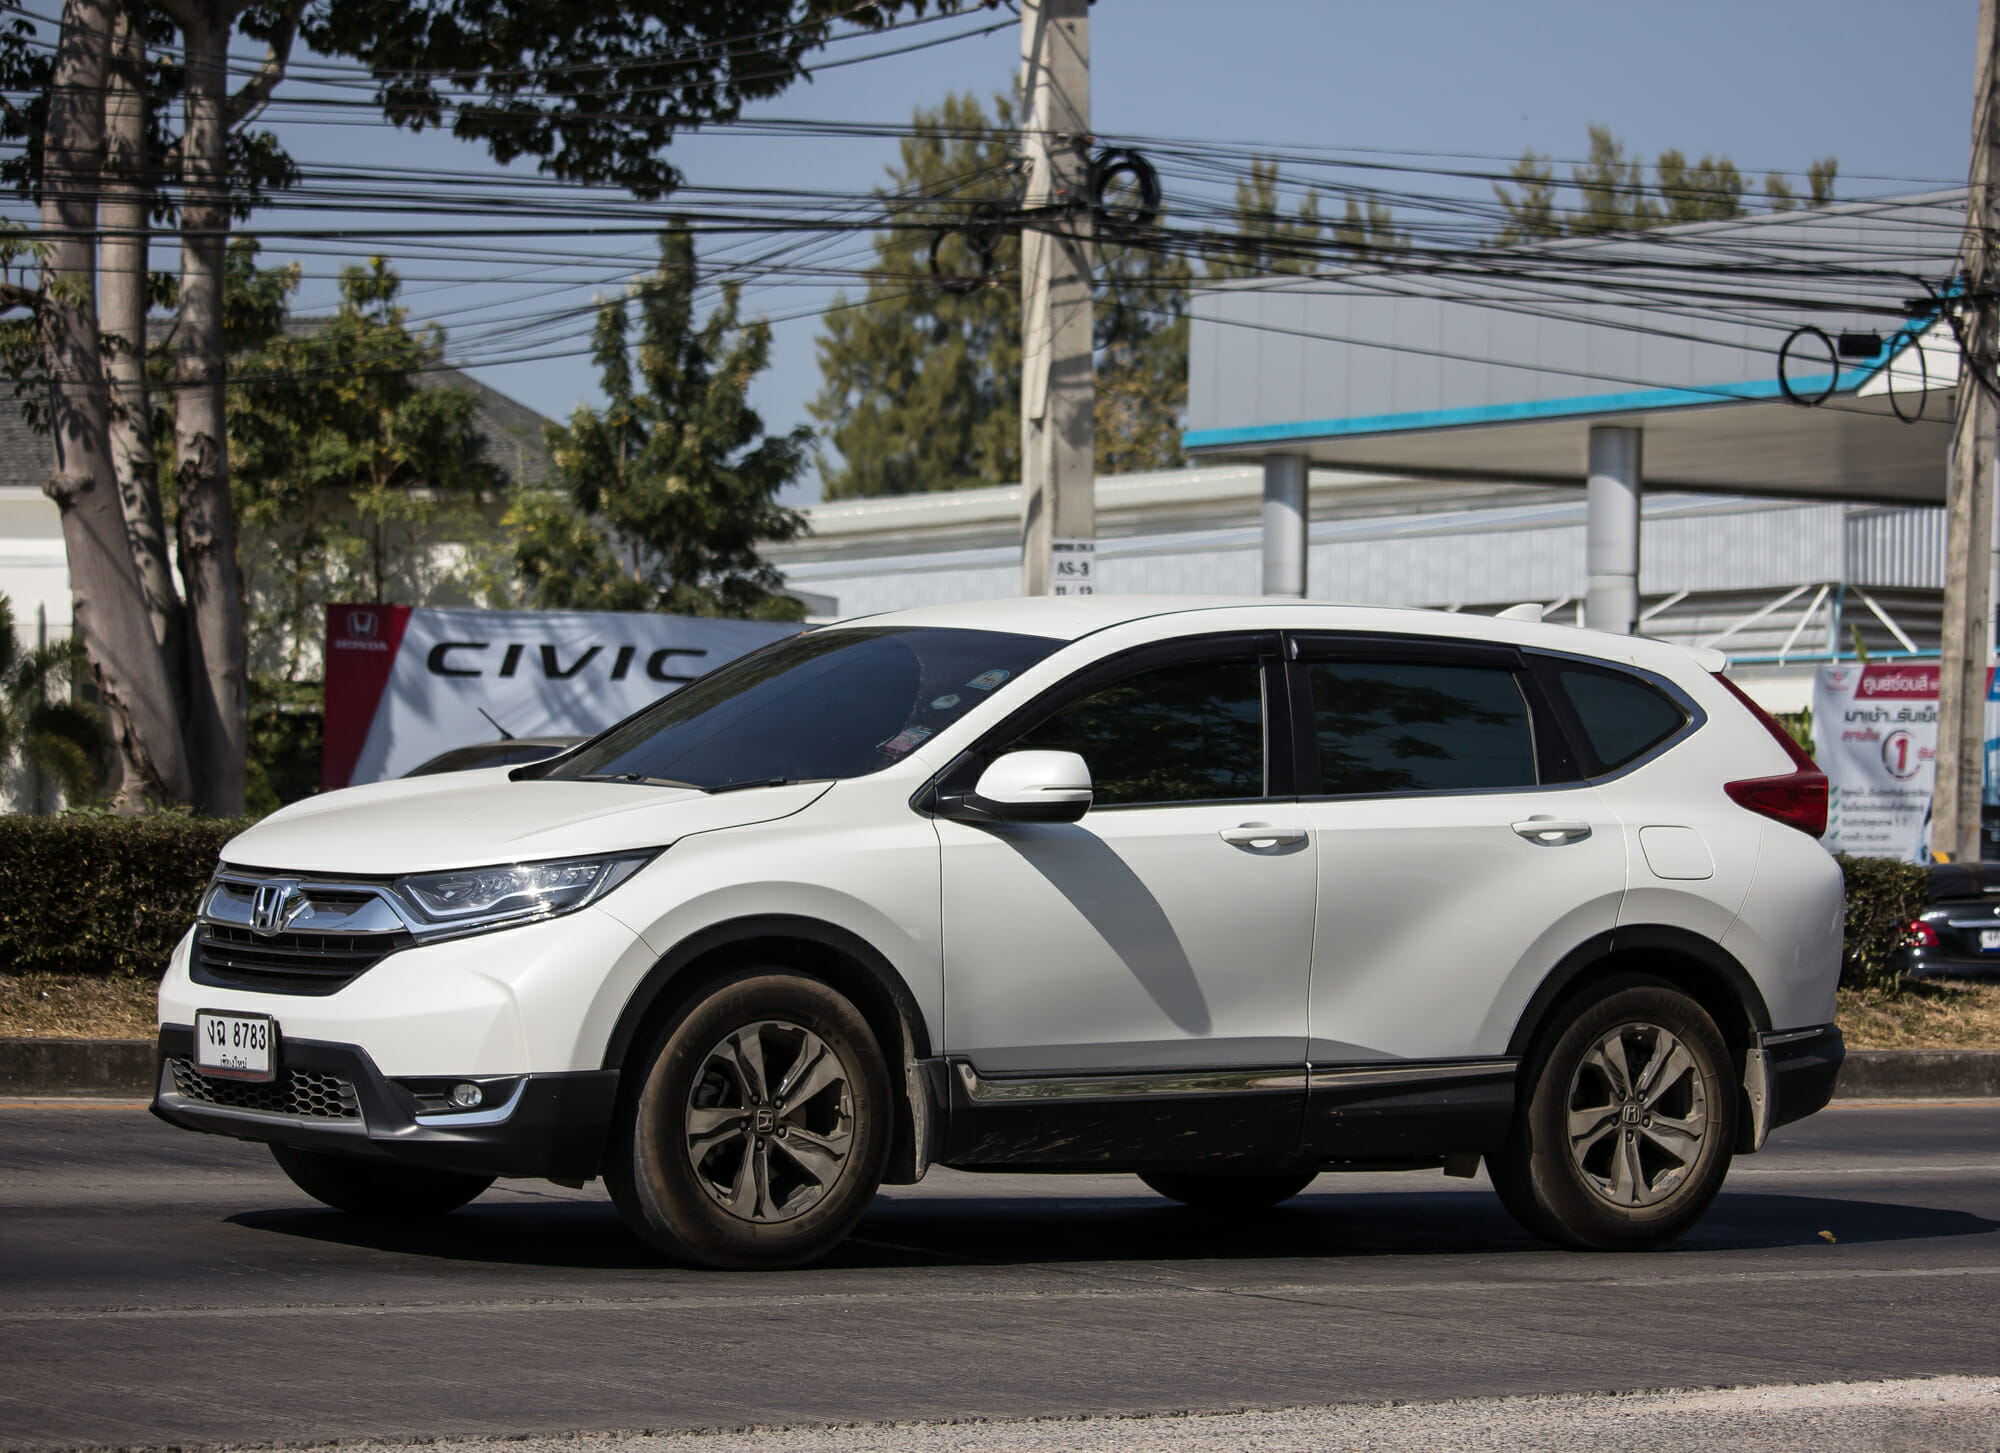 Honda CR-V blanco en movimiento en la calle de la ciudad - Fondo del vehículo